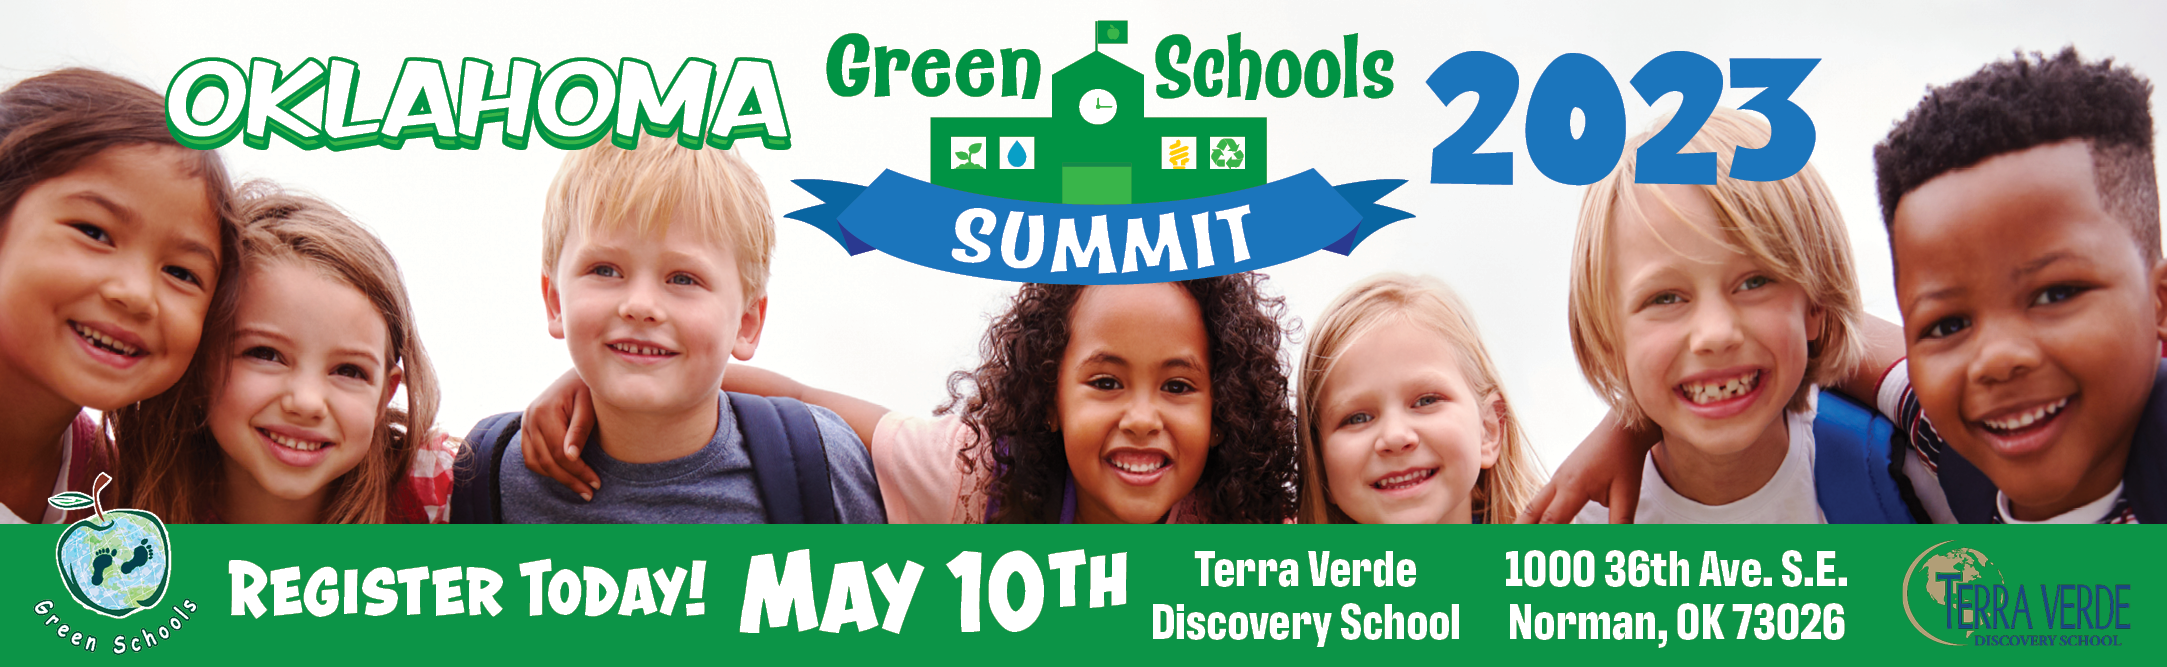 green schools summit